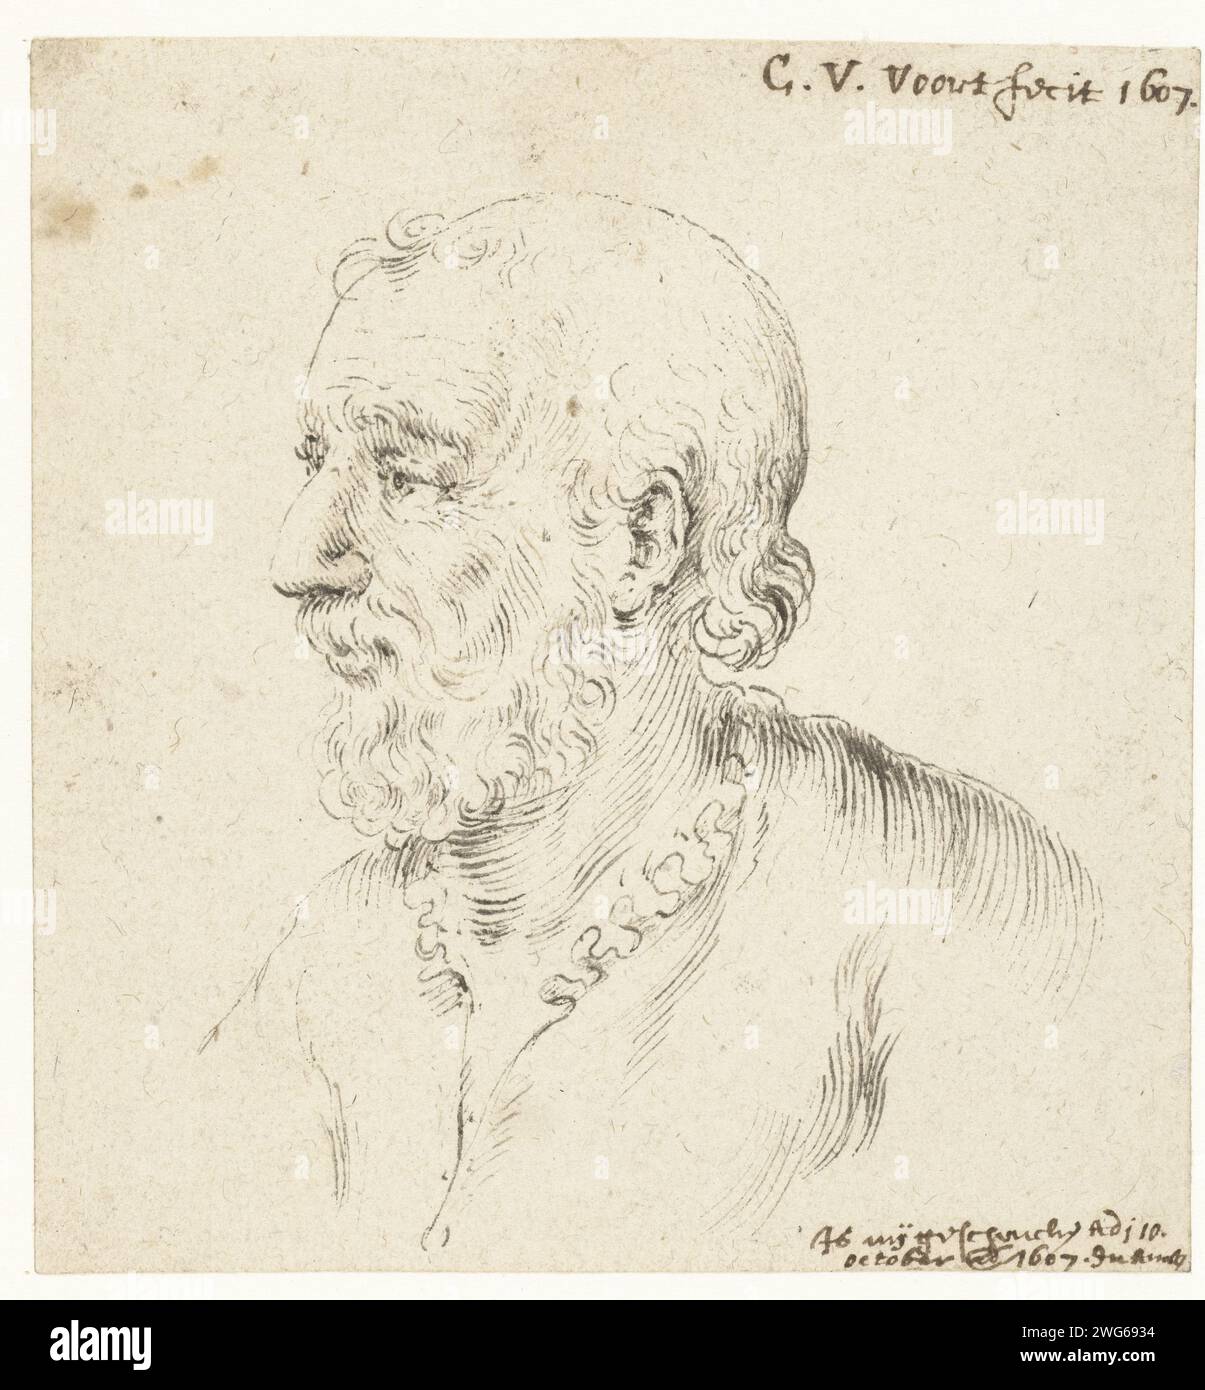 Tête d'homme avec barbe, de profil à gauche, Cornelis van der Voort, 1607 papier à dessin. stylo à encre personnes historiques non connues par leur nom. tête (humaine) Banque D'Images